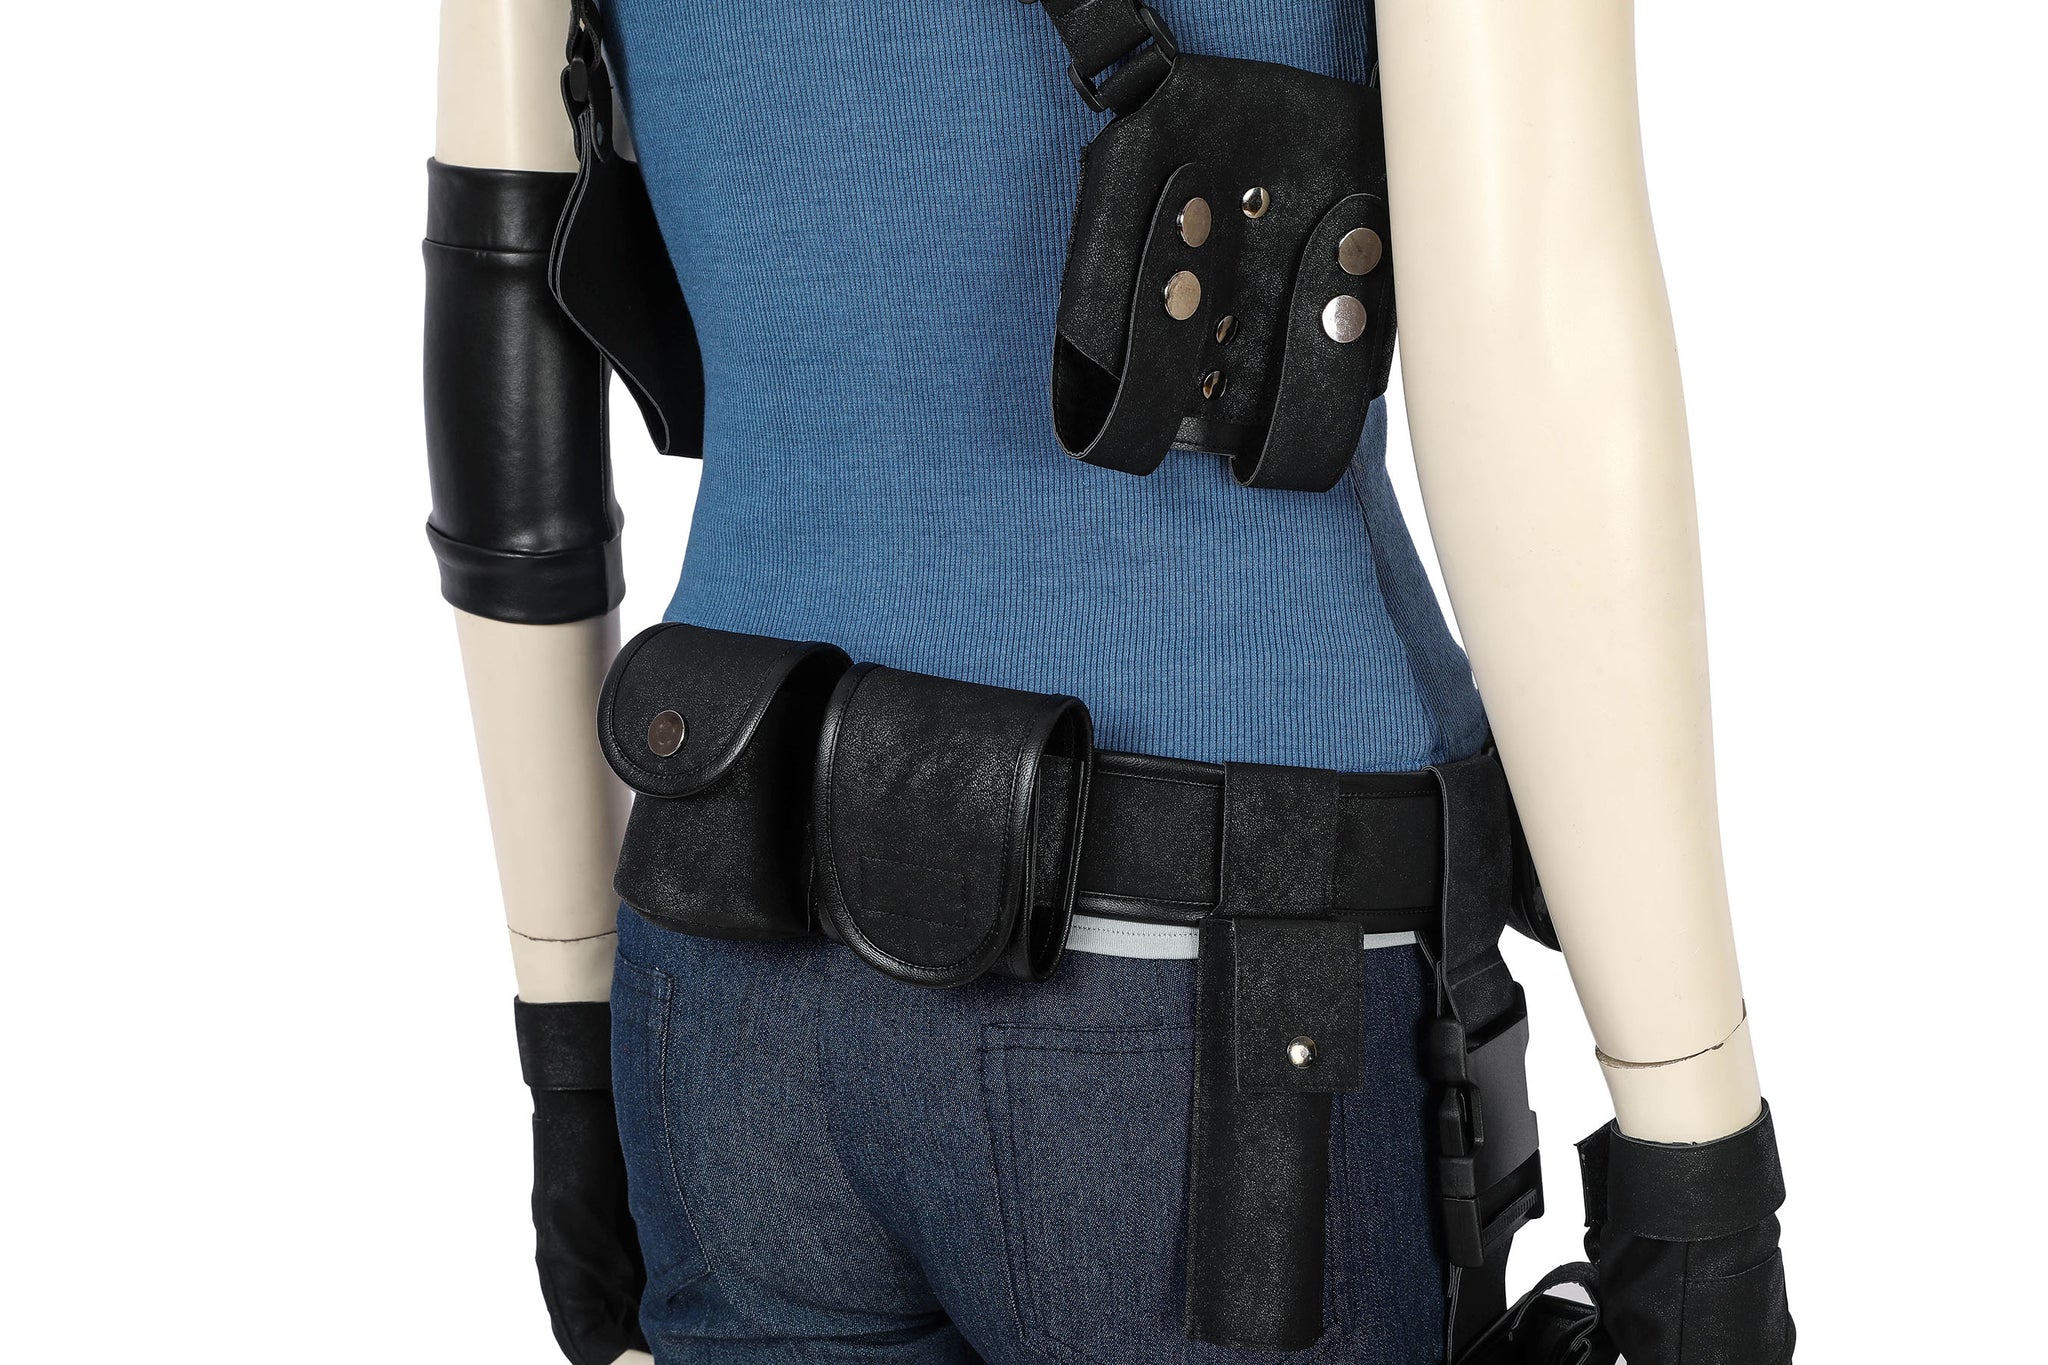 HZYM Resident Evil 3 Remake Jill Valentine Cosplay Costume Full